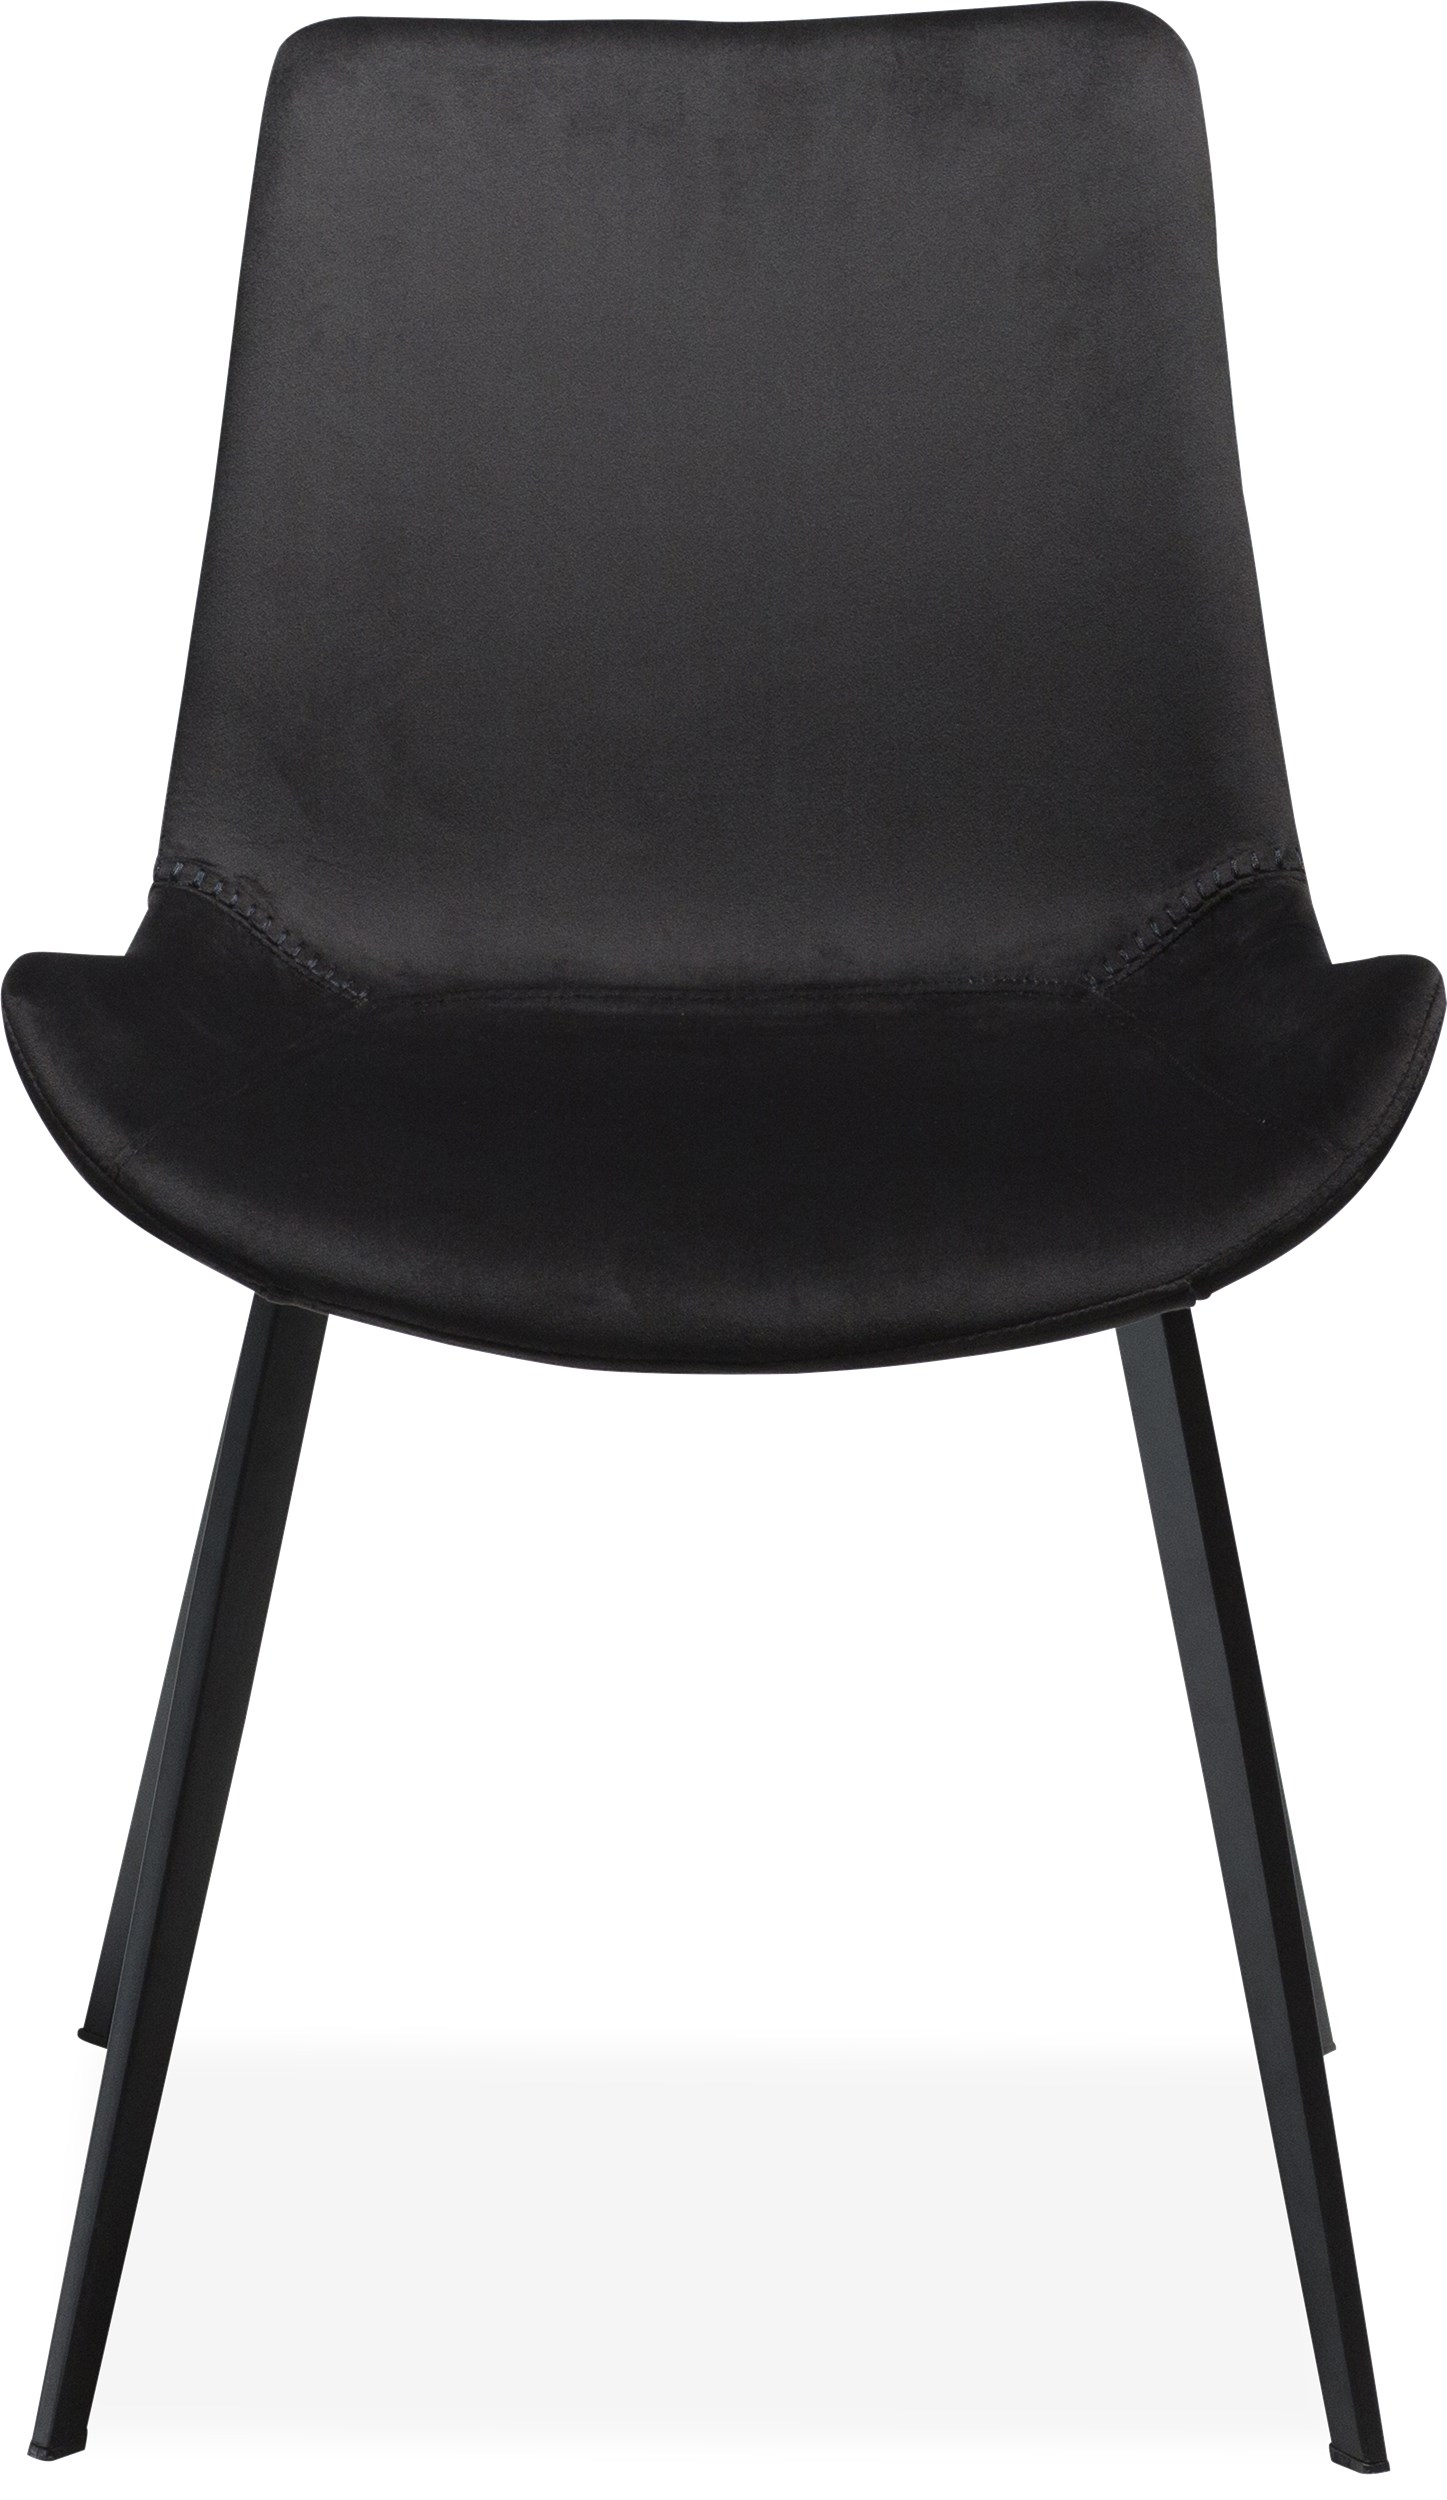 Hype matstol - Sits i meteorite black velourtyg och ben i svartlackerad metall